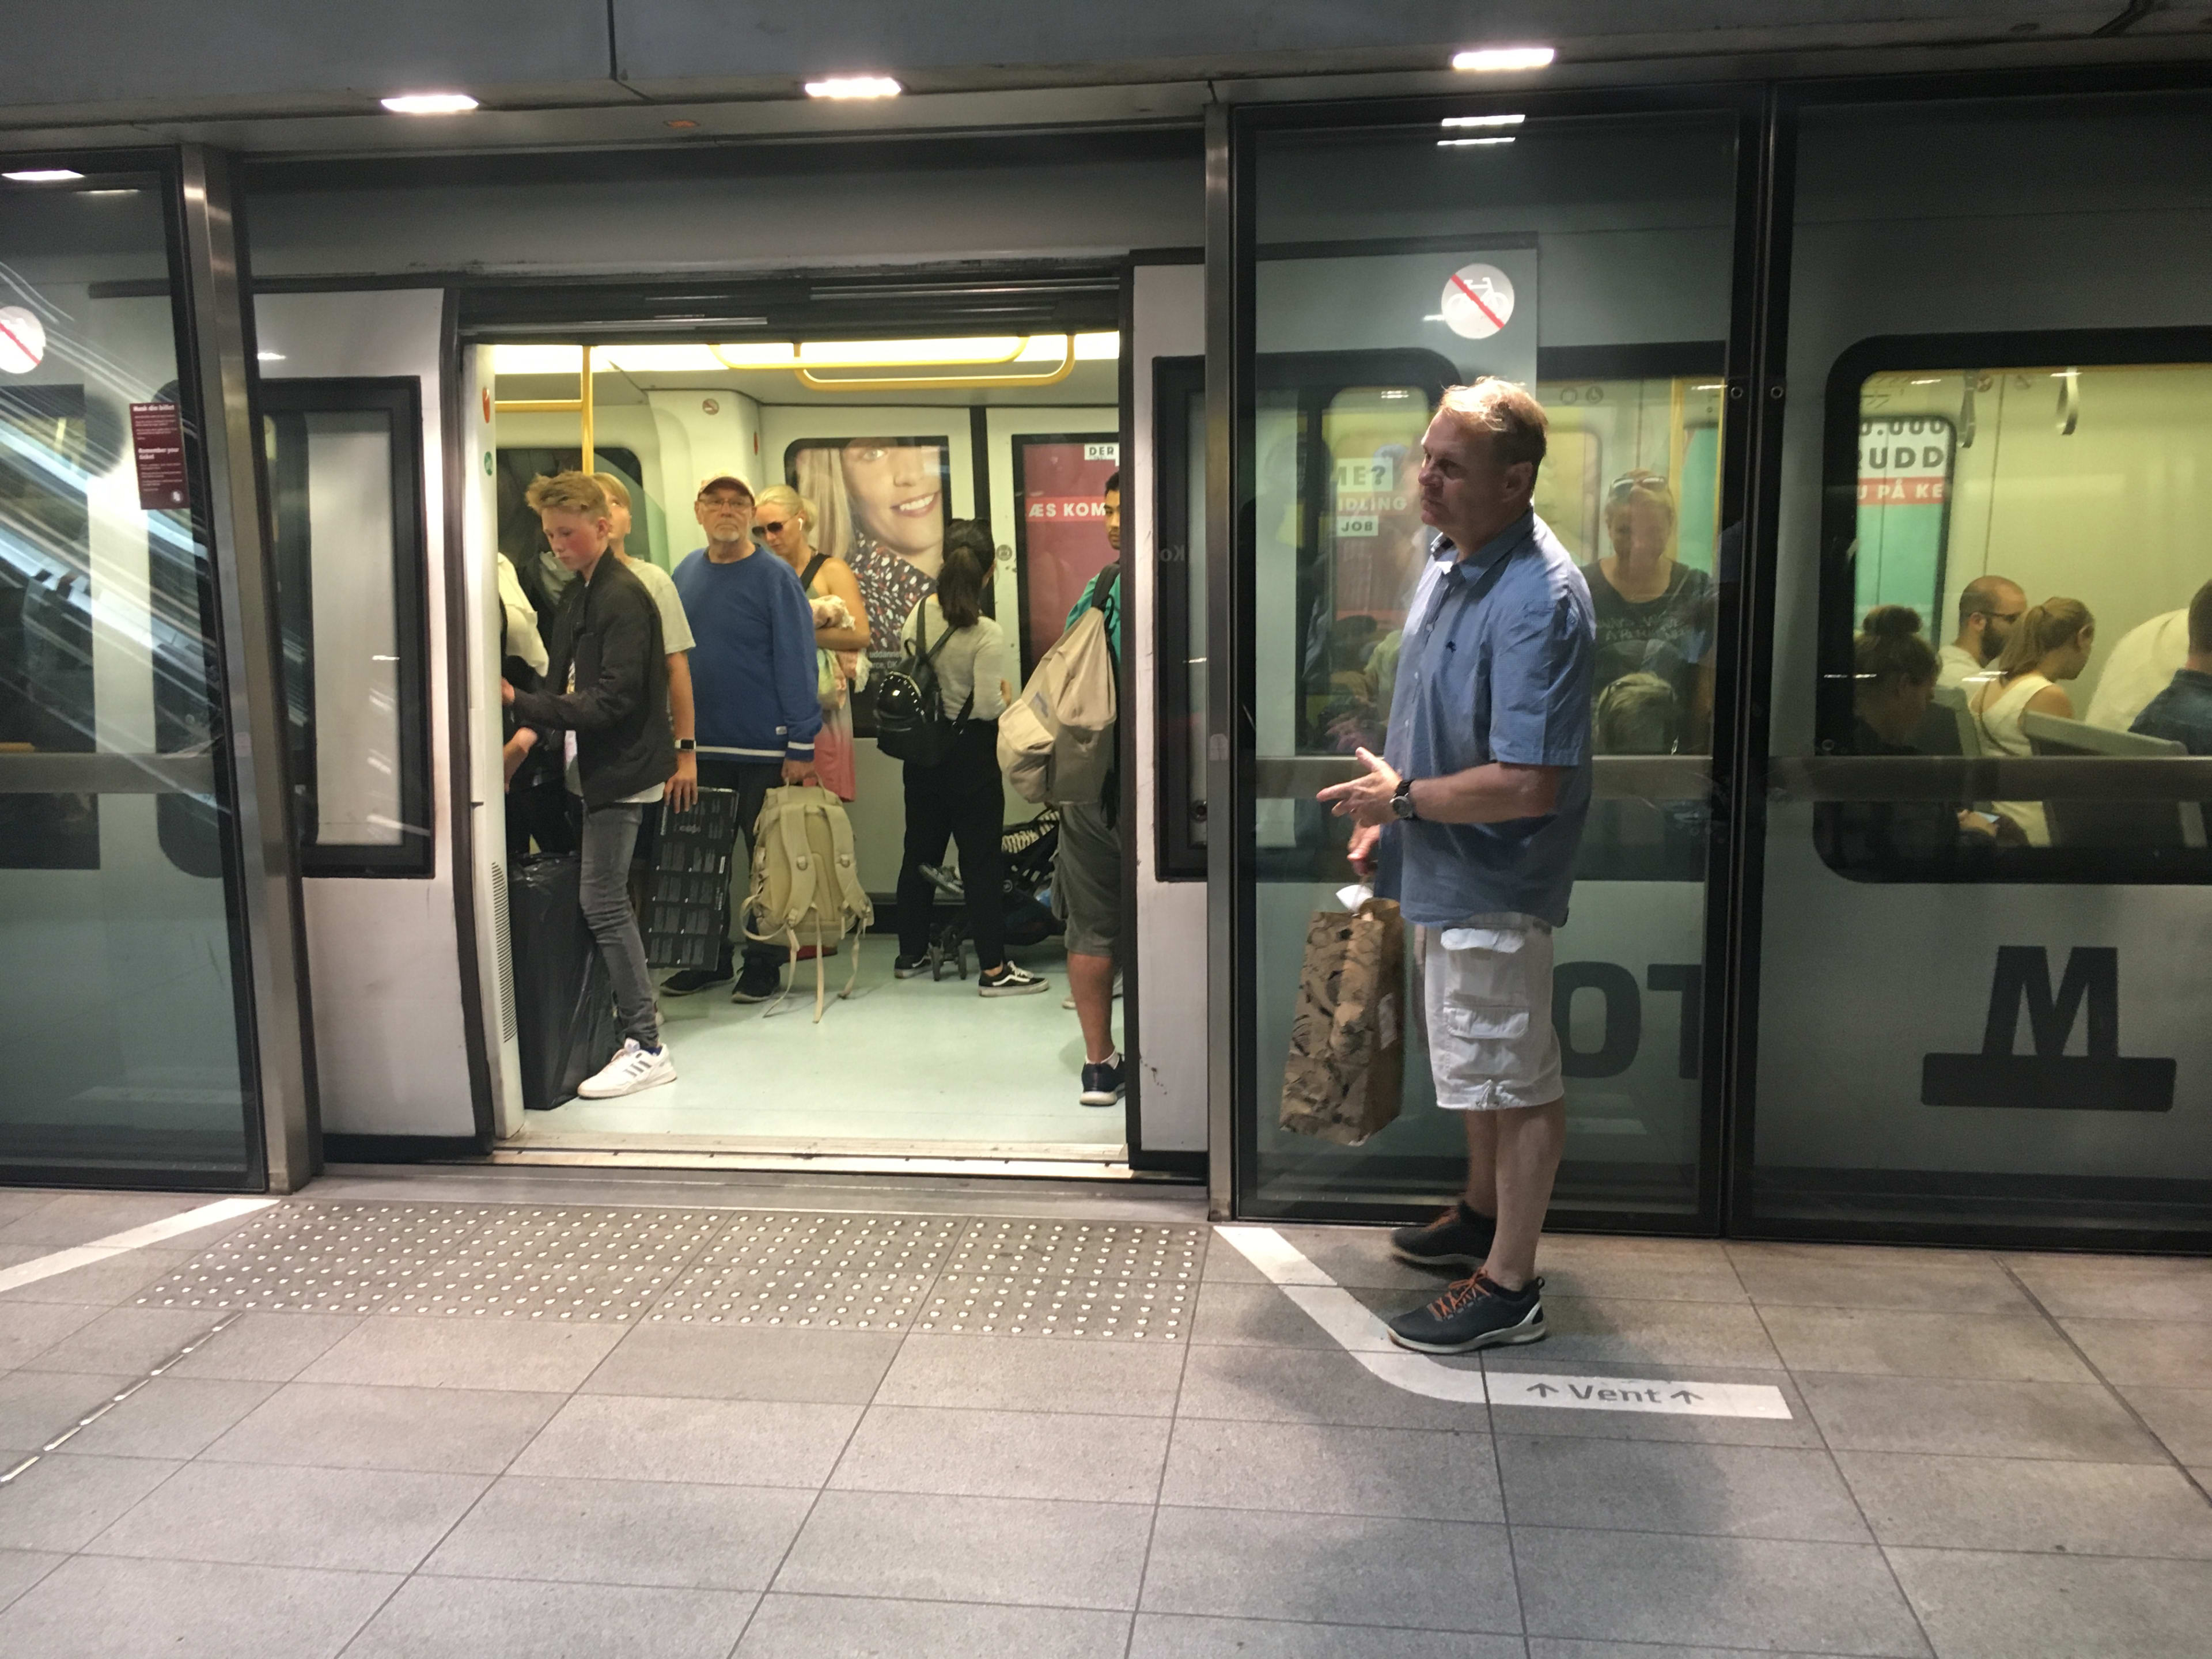 A man stands next to a subway car.